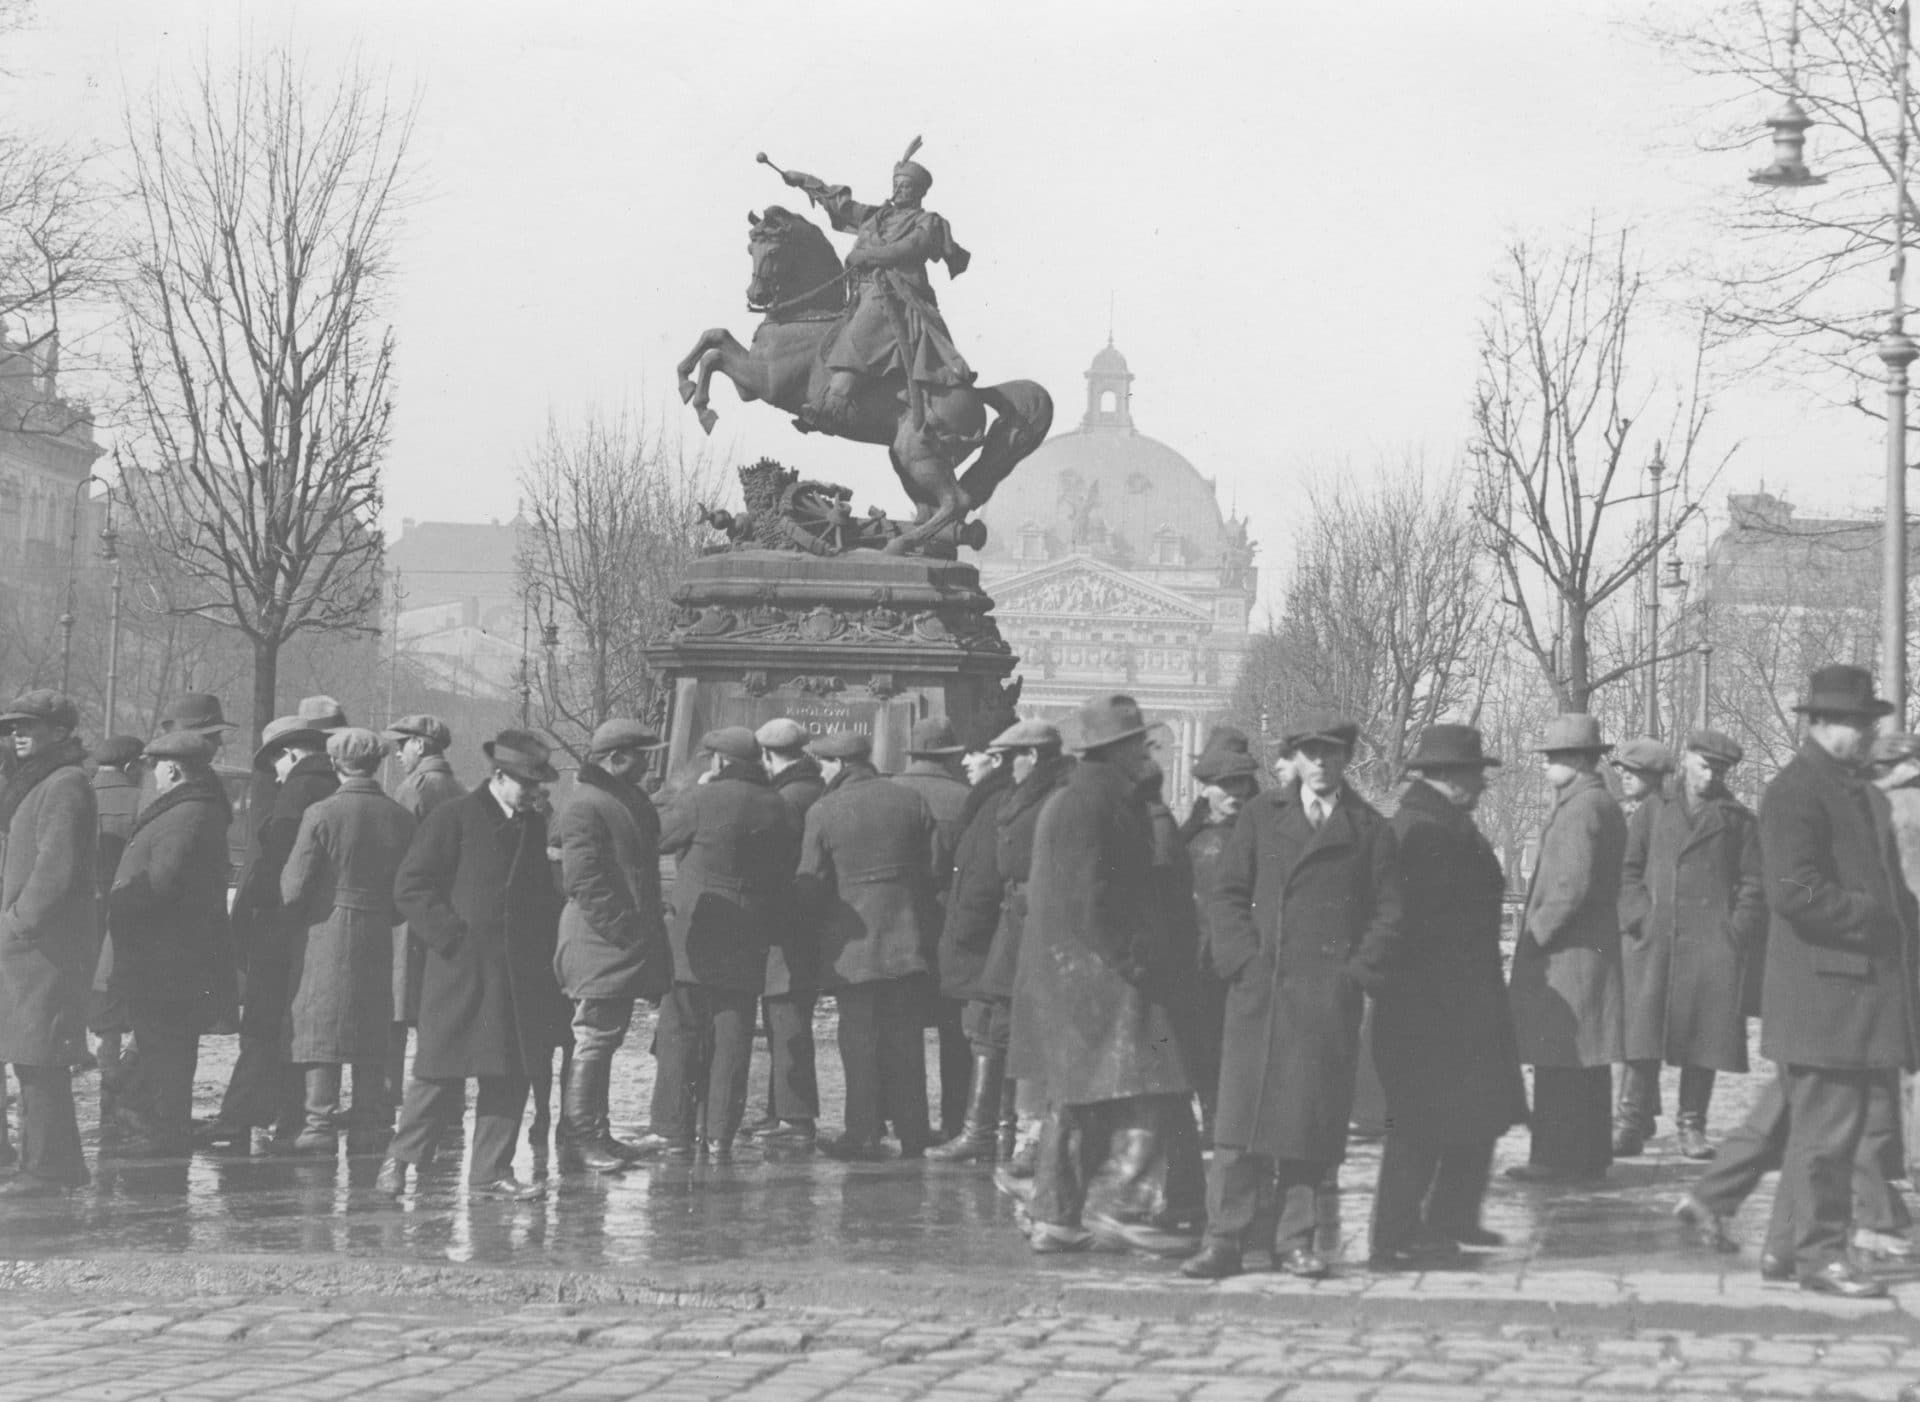 Grupa bezrobotnych mężczyzn na "giełdzie pracy" pod pomnikiem Jana Sobieskiego we Lwowie. Źródło: Narodowe Archiwum Cyfrowe.